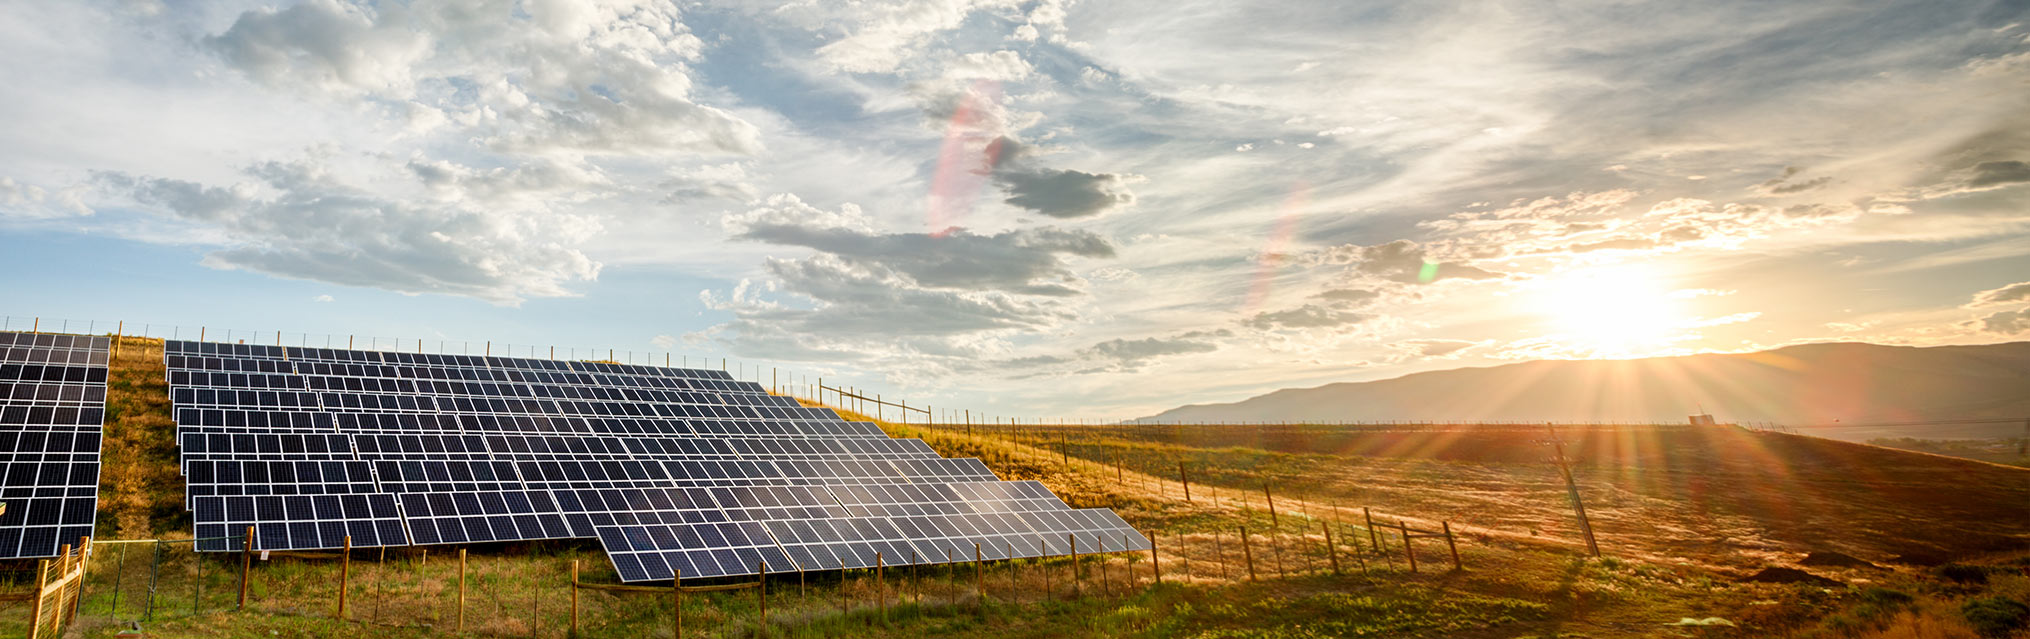 Reembolsos e incentivos por energía solar en Texas
